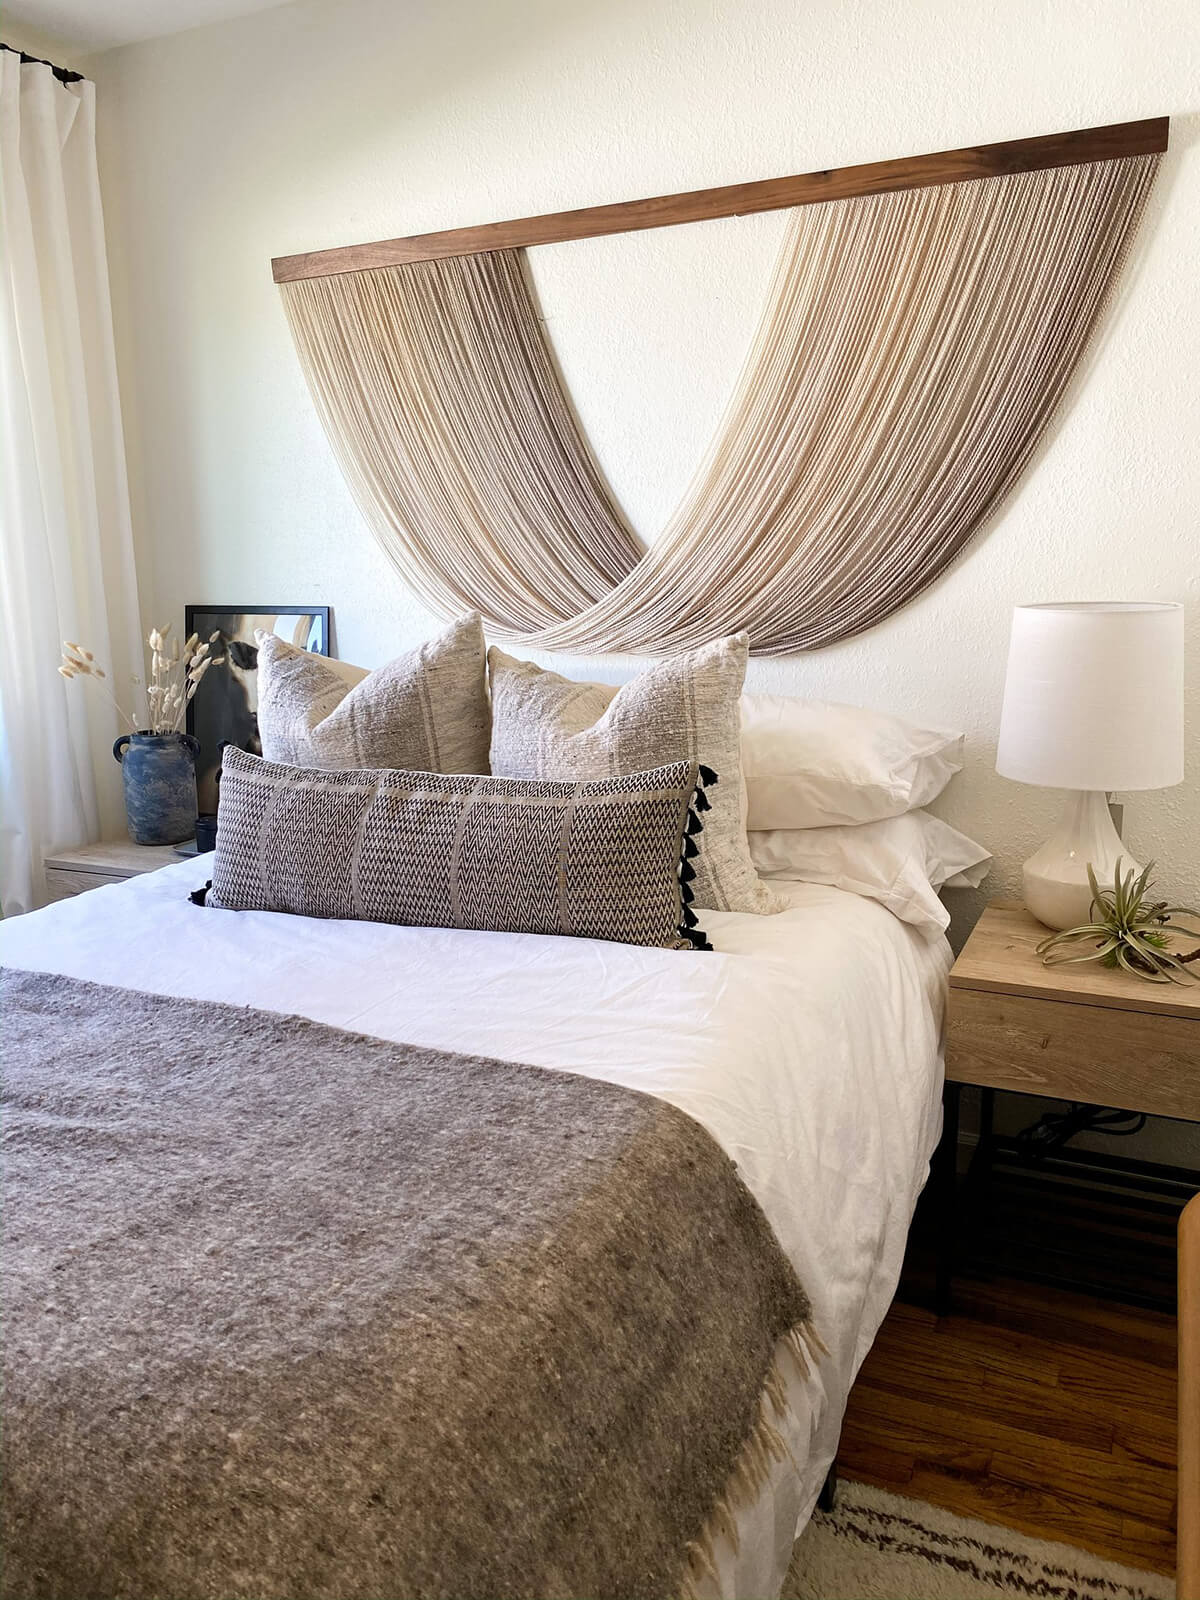 Creatice Bohemian Bedroom Ideas for Simple Design